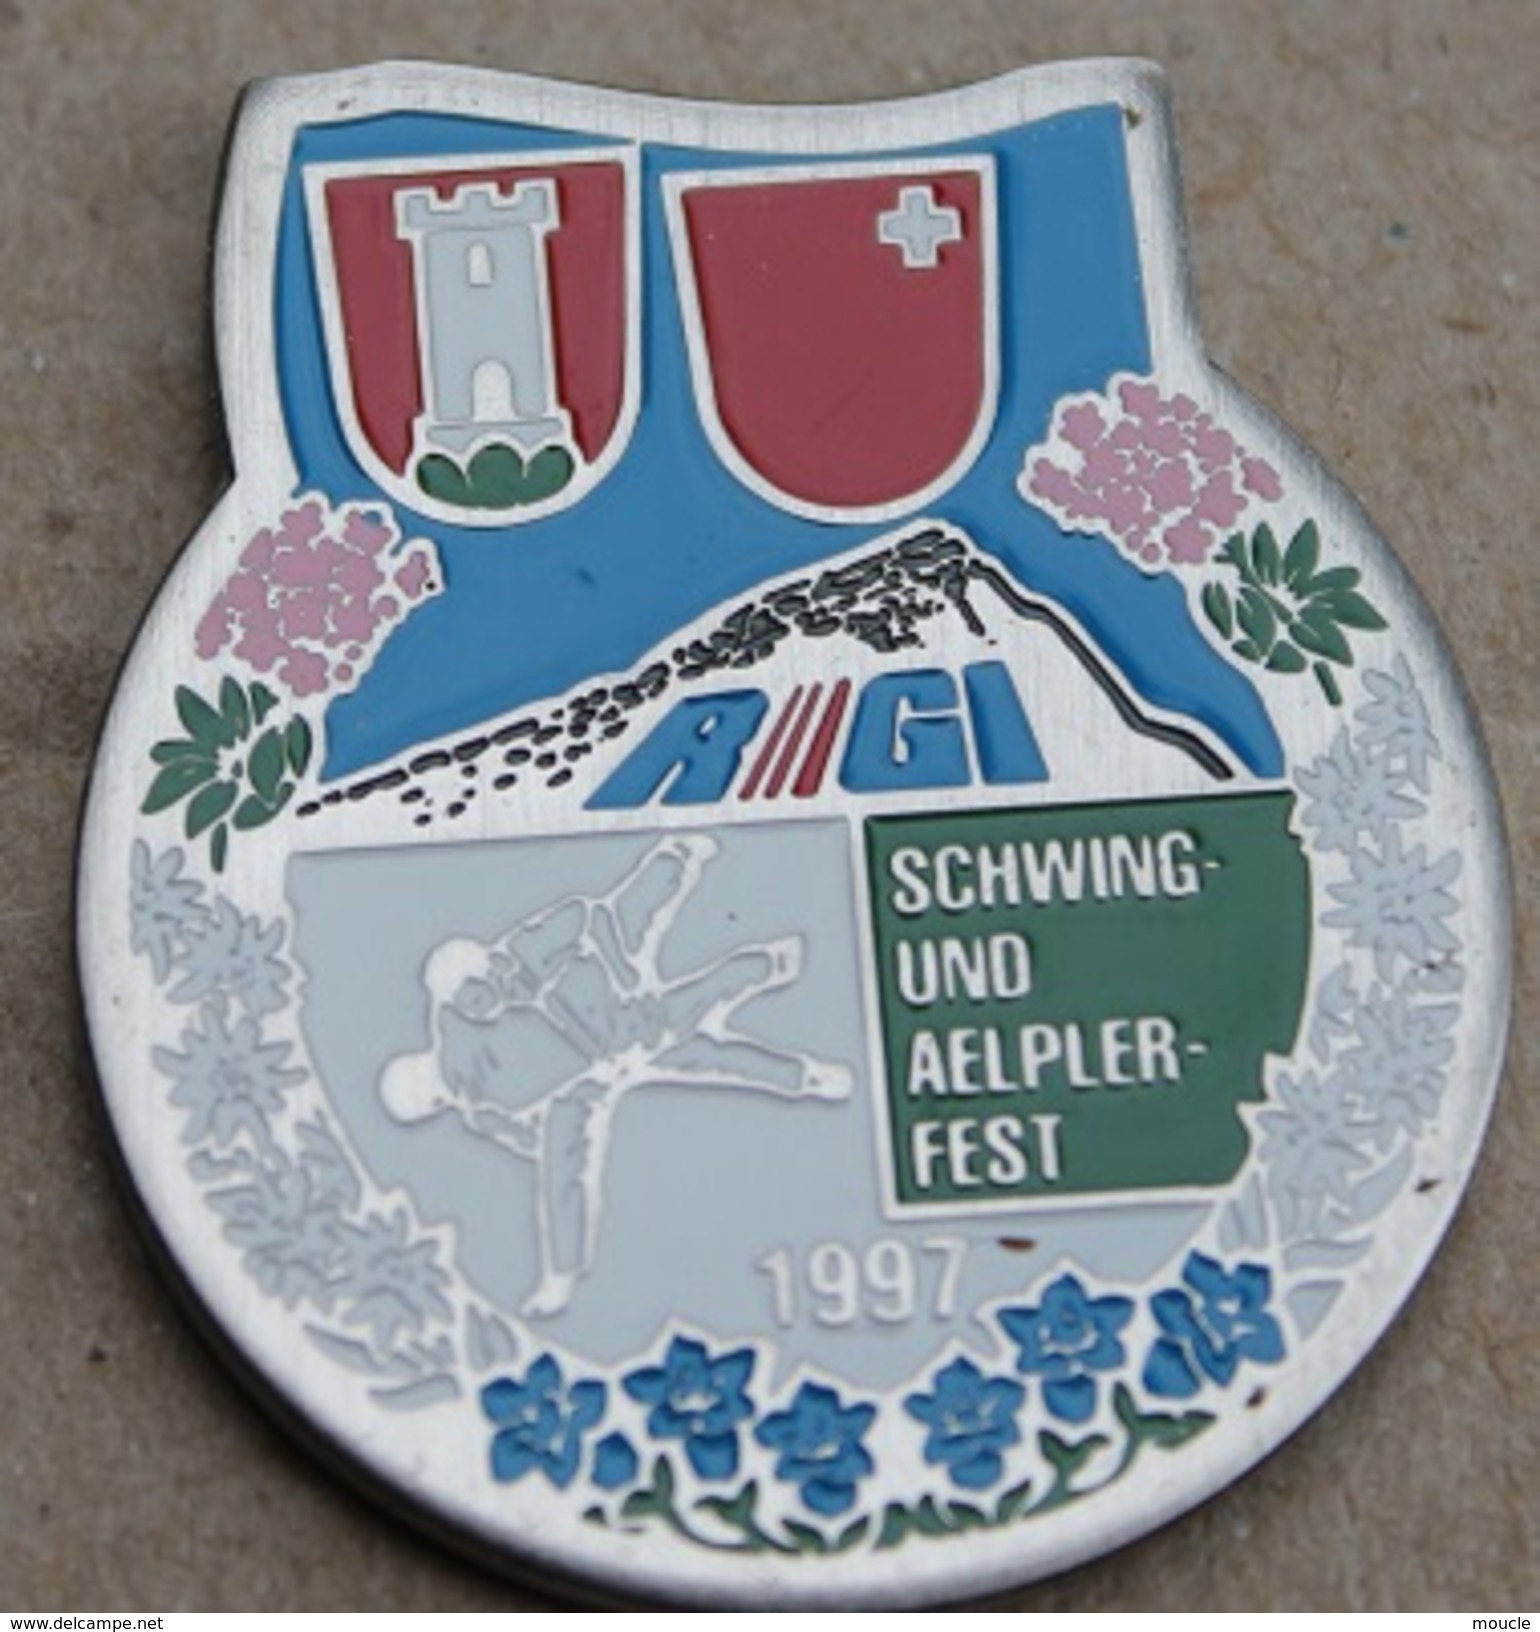 LUTTE SUISSE - SCHWING UND AELPLERFEST 1997 - SUISSE - SCHWEIZ - SWIZTERLAND - RIGI - DRAPEAU CANTON DE SCHWYZ -    (14) - Lucha